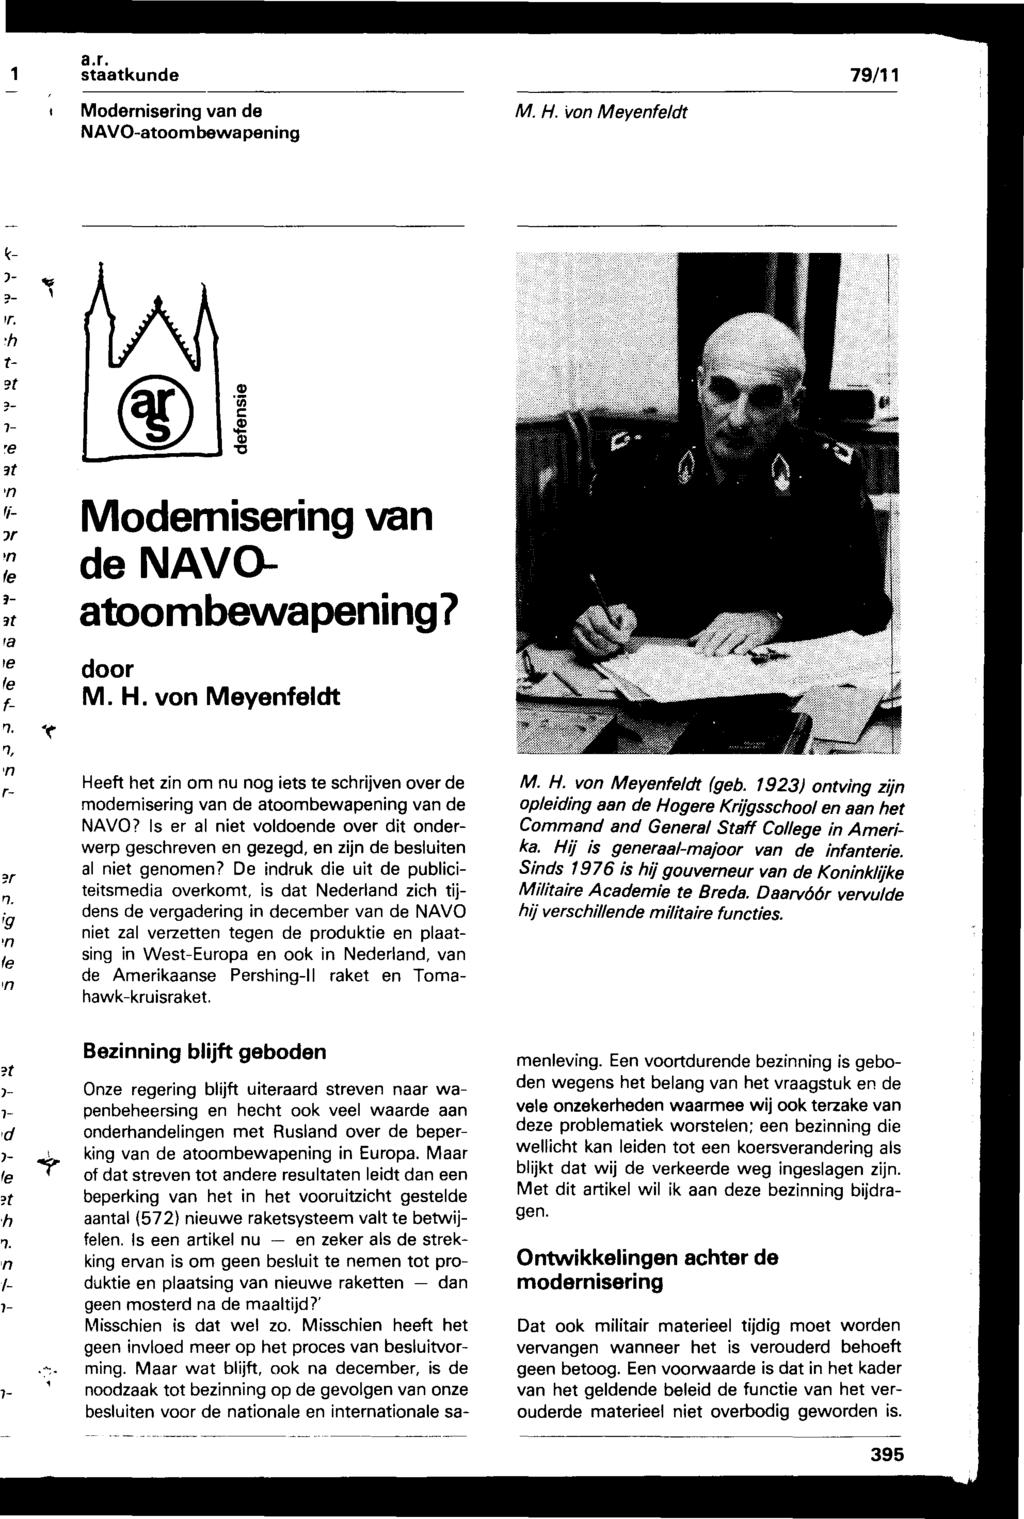 Modernisering van de NAVOatoom bewapening M. H. von Meyenfeldt Modemisering van de NAVOatoombewapening "7 door M. H. von Meyenfeldt Heeft het zin om nu nog iets te schrijven over de modemisering van de atoombewapening van de NAVO?